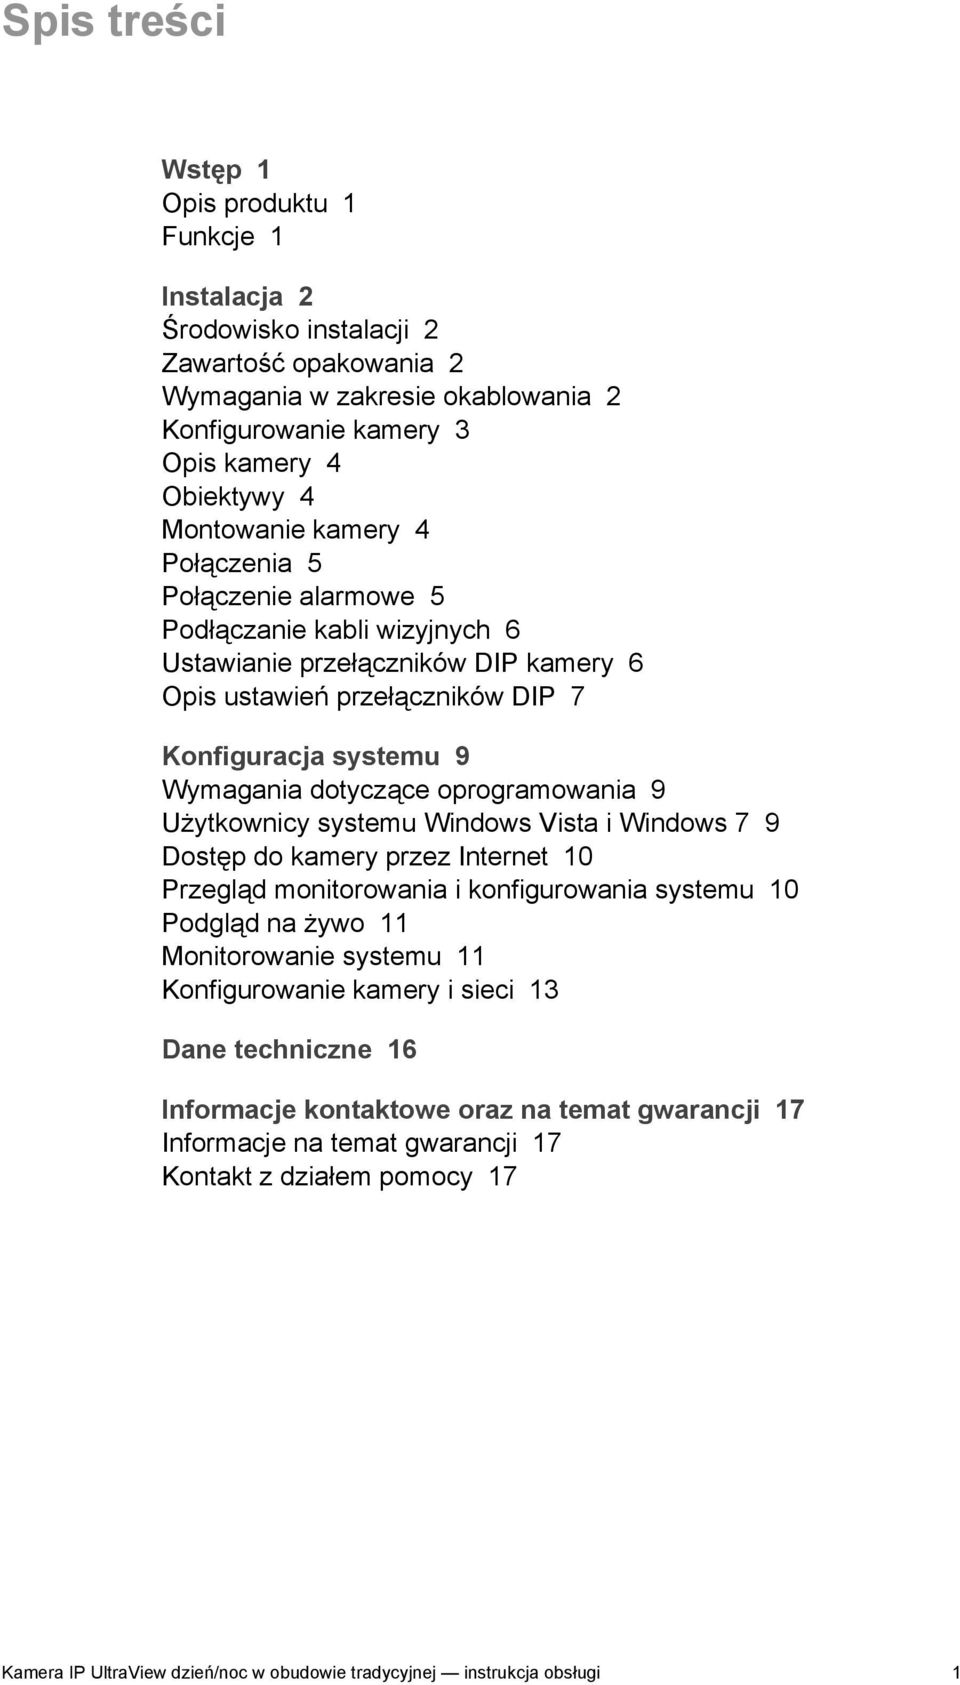 oprogramowania 9 Użytkownicy systemu Windows Vista i Windows 7 9 Dostęp do kamery przez Internet 10 Przegląd monitorowania i konfigurowania systemu 10 Podgląd na żywo 11 Monitorowanie systemu 11